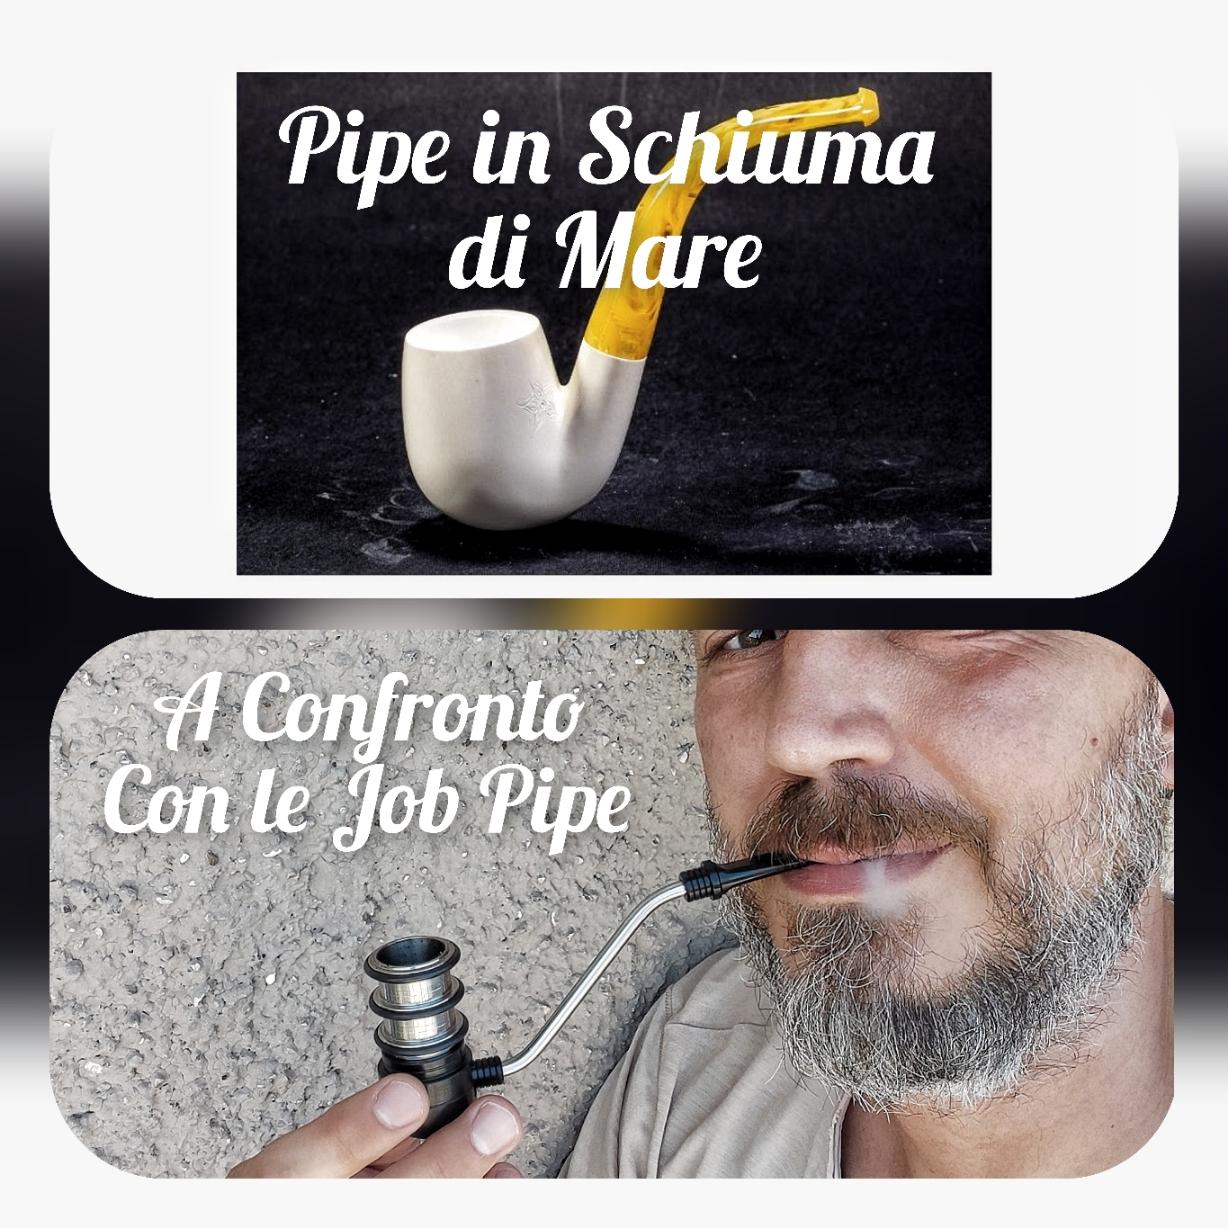 Le Pipe in Schiuma di Mare paragonate alle Job Pipe ?